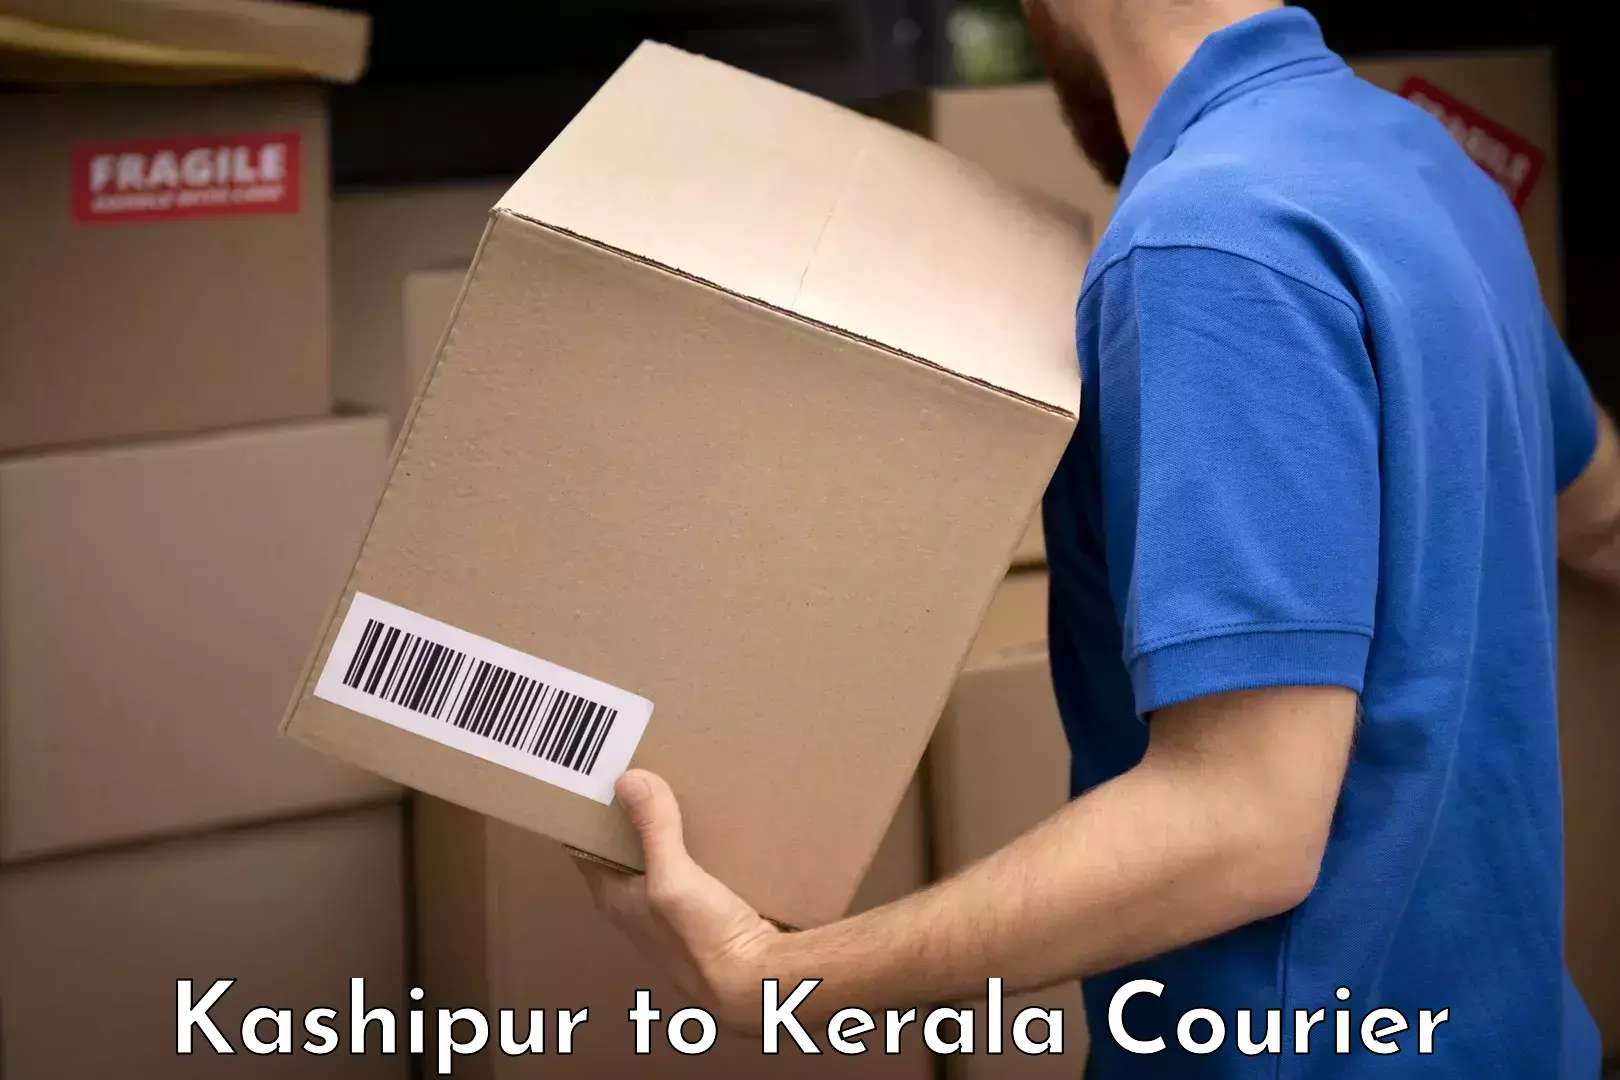 Urgent luggage shipment Kashipur to Mahatma Gandhi University Kottayam